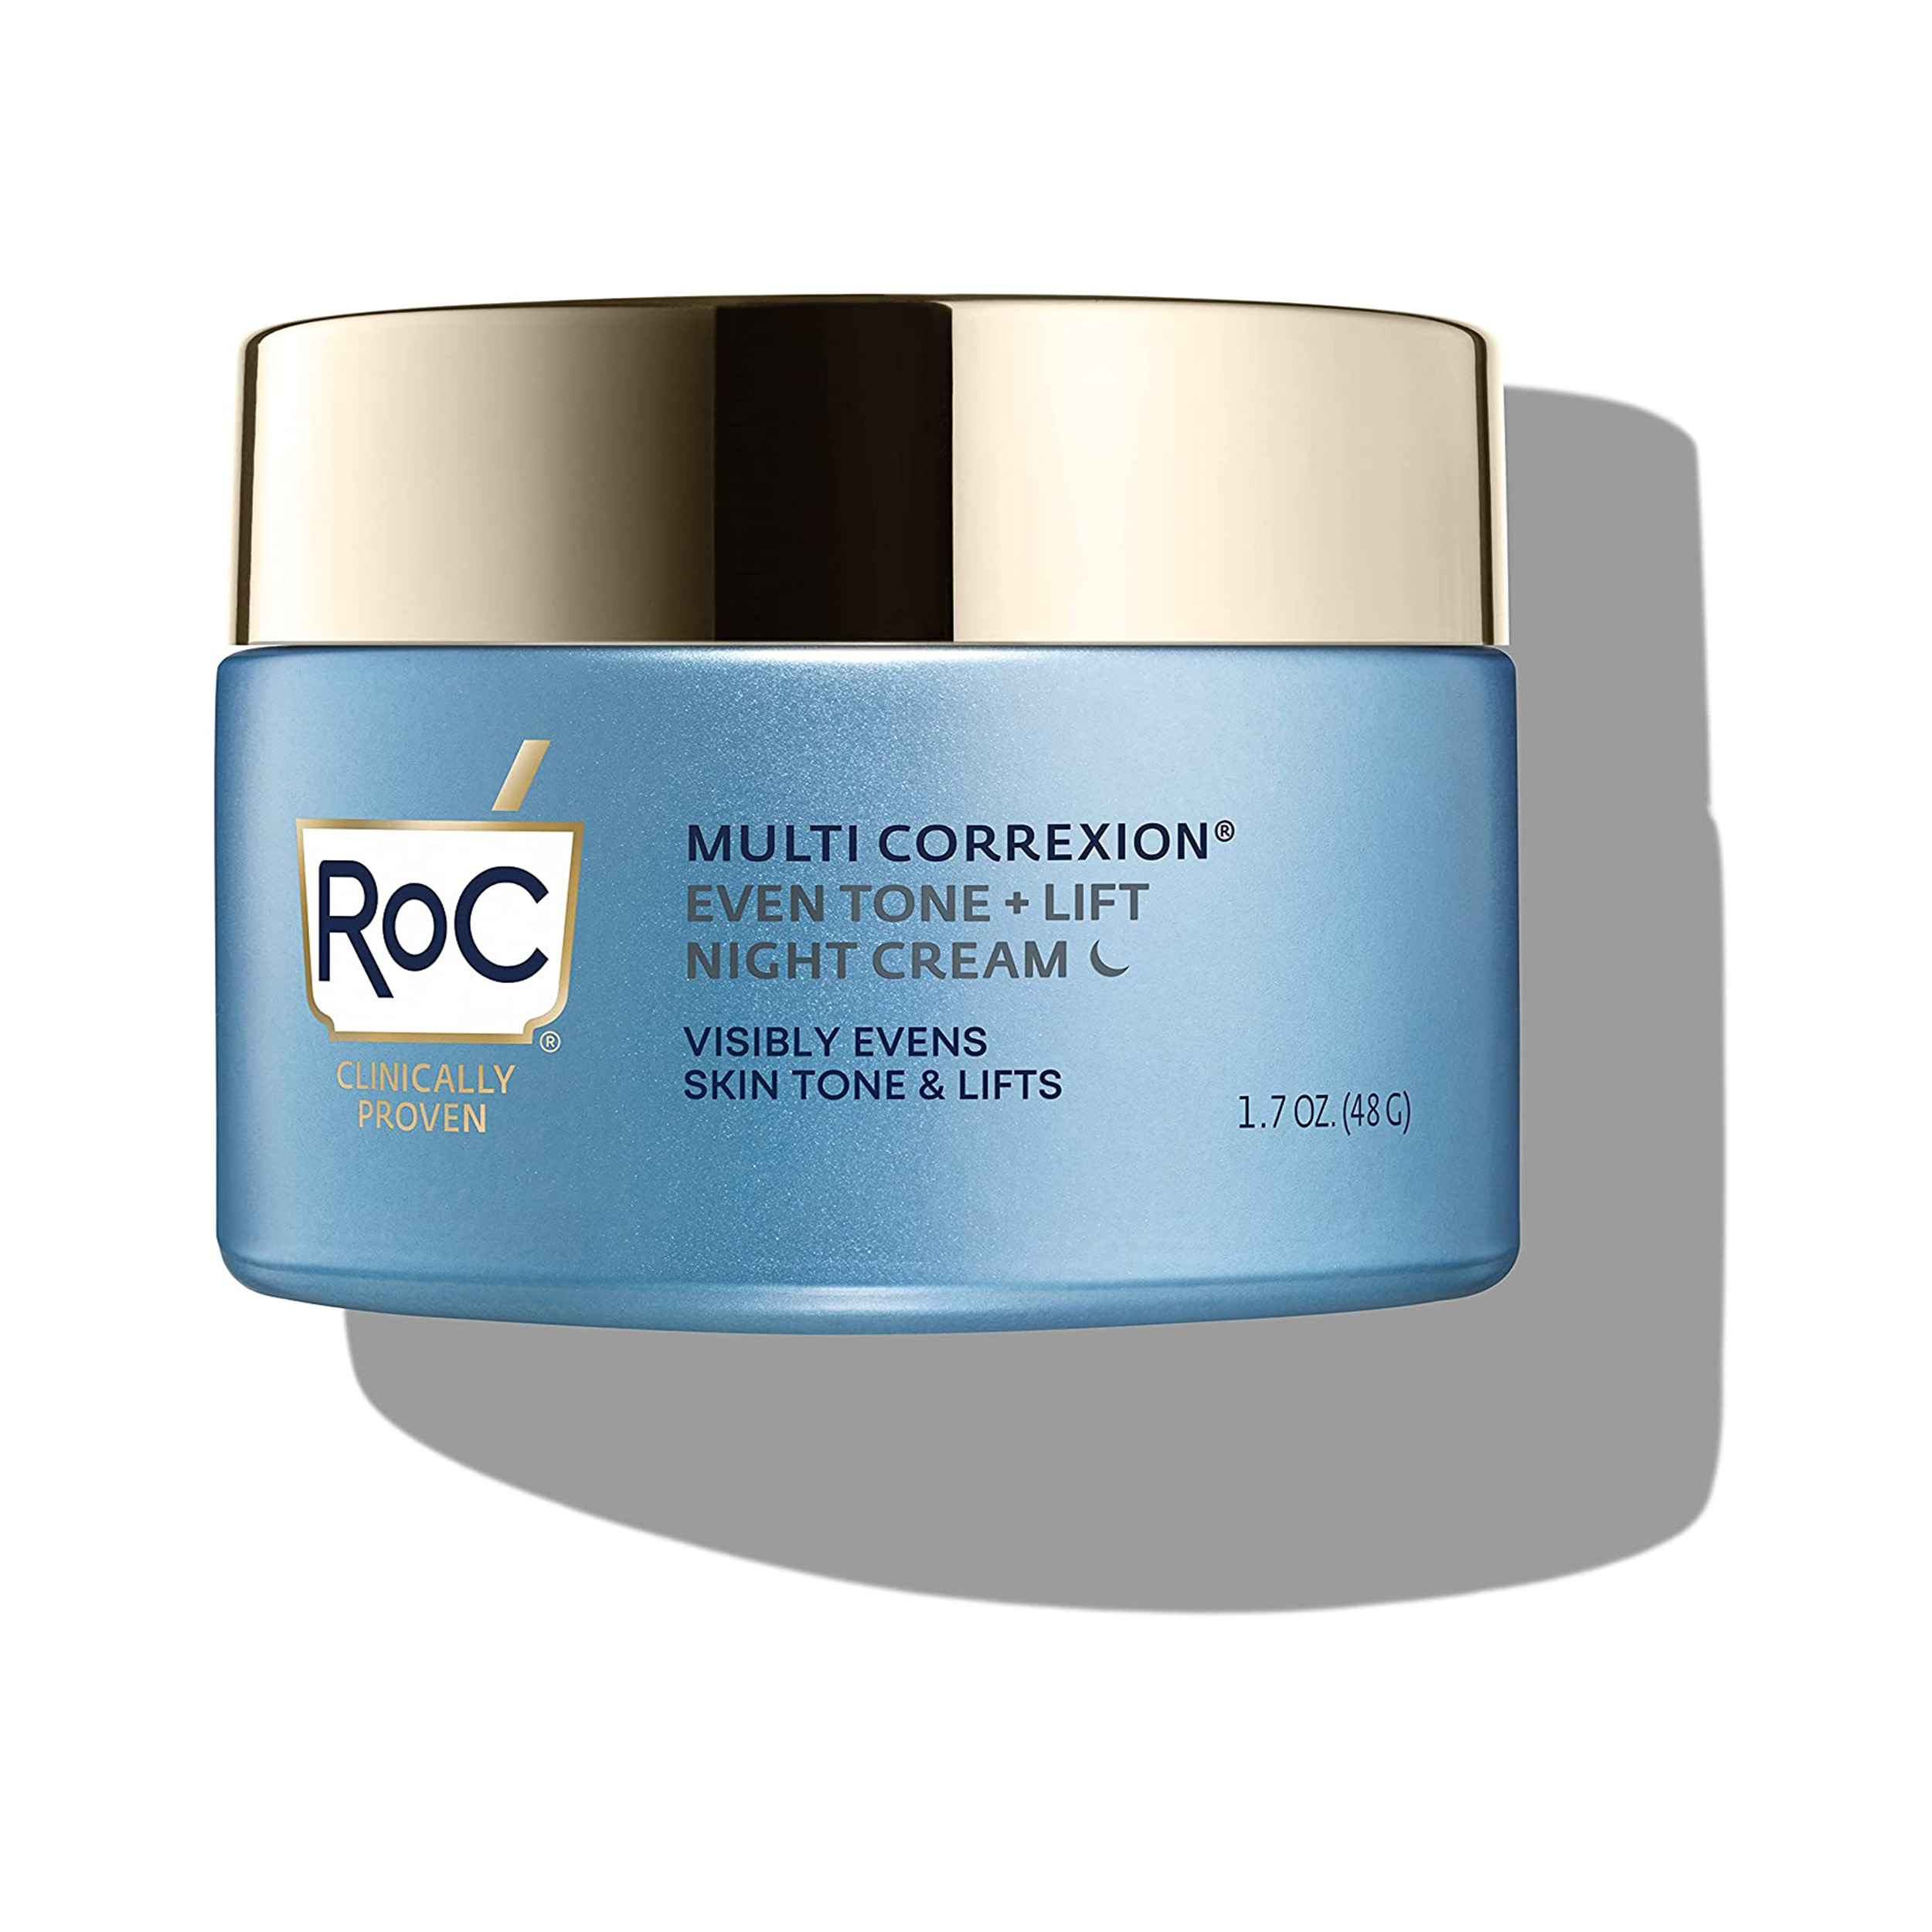 RoC Multi Correxion 5 in 1 Restoring Night Cream, 1.7 oz (Pack of 2) - image 2 of 2